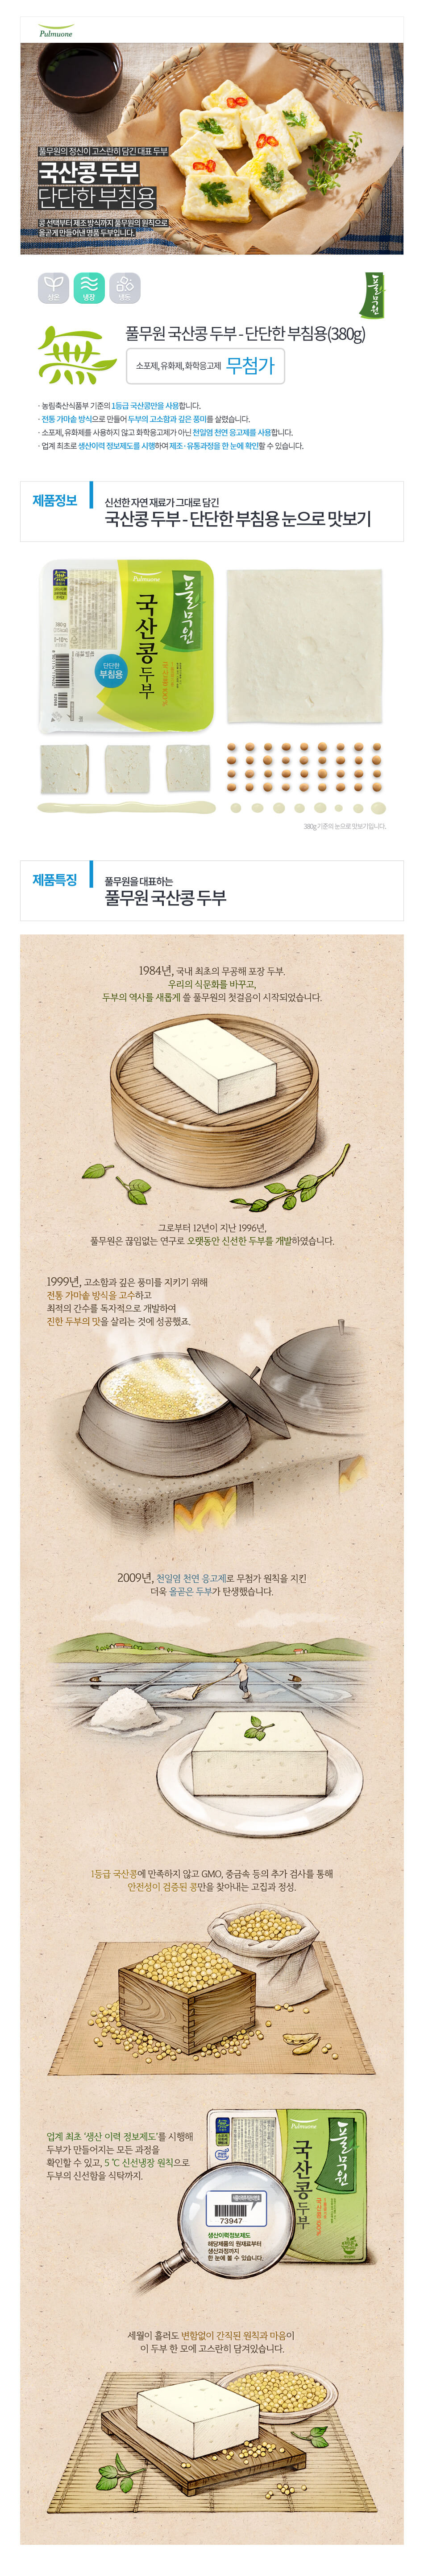 韓國食品-[圃木園] 煎用豆腐 300g